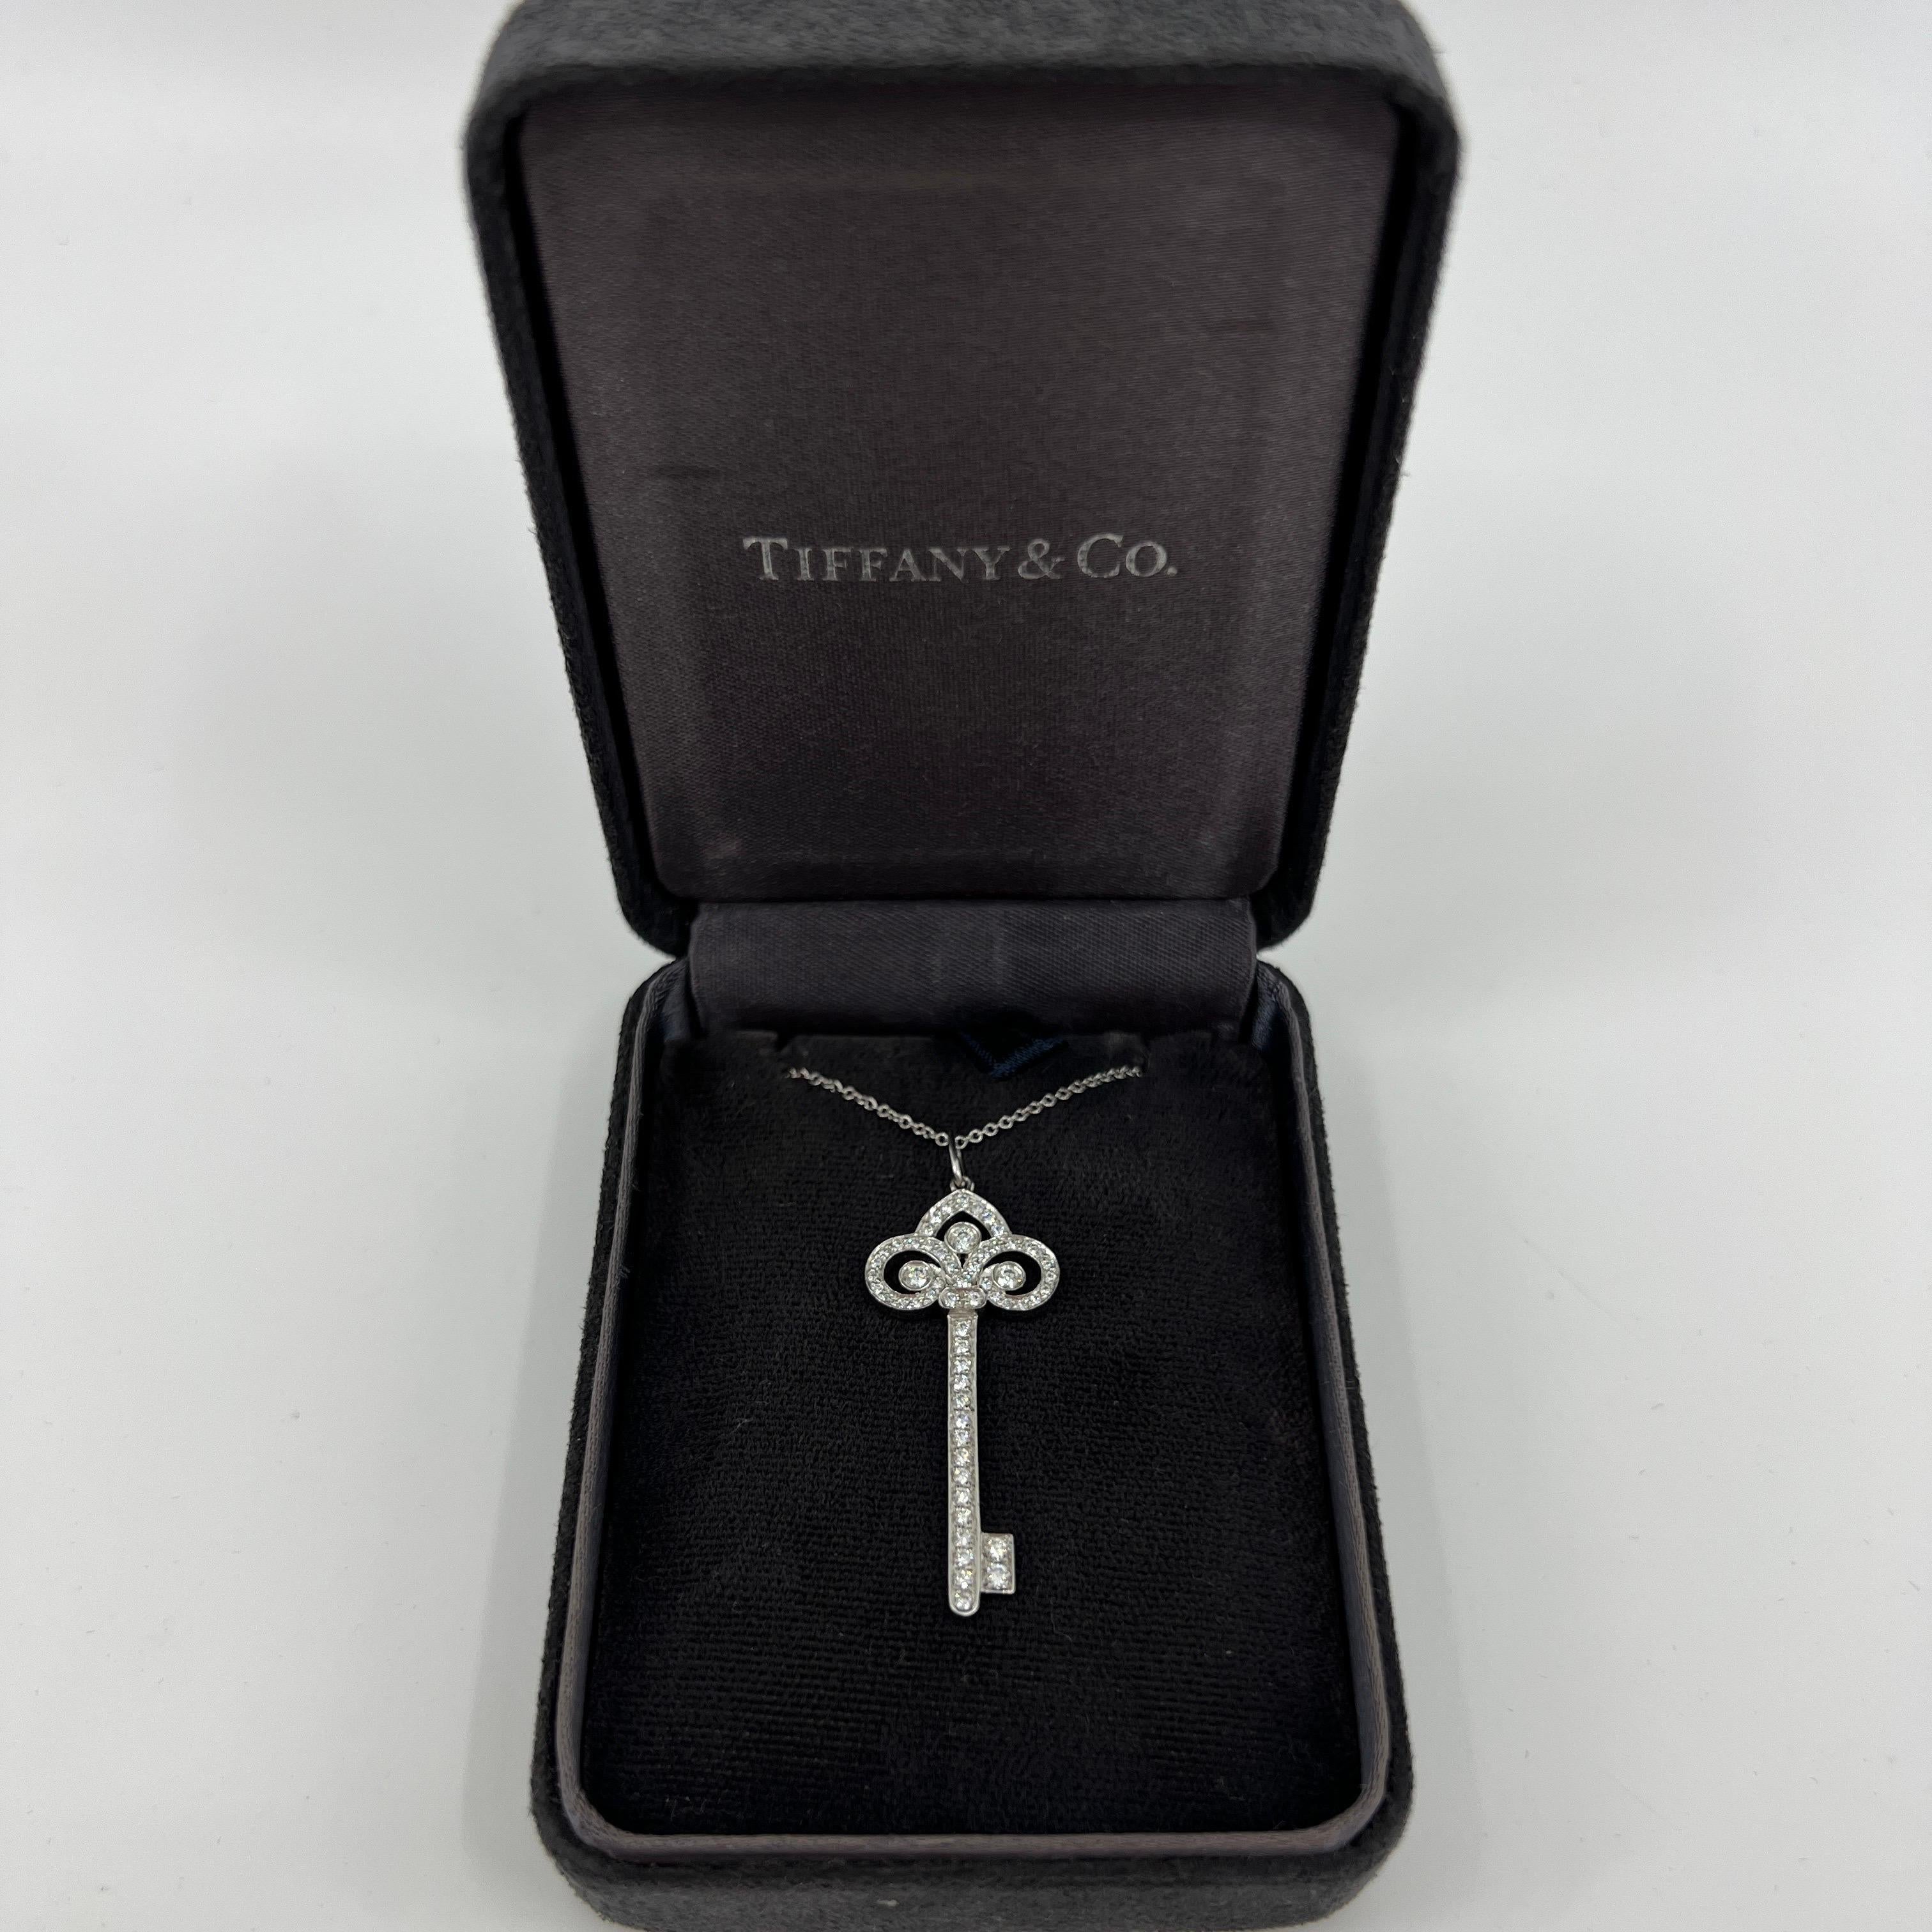 Tiffany & Co. 'Fleur de Lis' Diamant Platin 1,5 Zoll Schlüssel Anhänger Halskette.

Ein schöner und seltener authentischer Tiffany-Schlüsselanhänger im Fleur-De-Lis-Stil. Tiffany-Schlüssel sind 